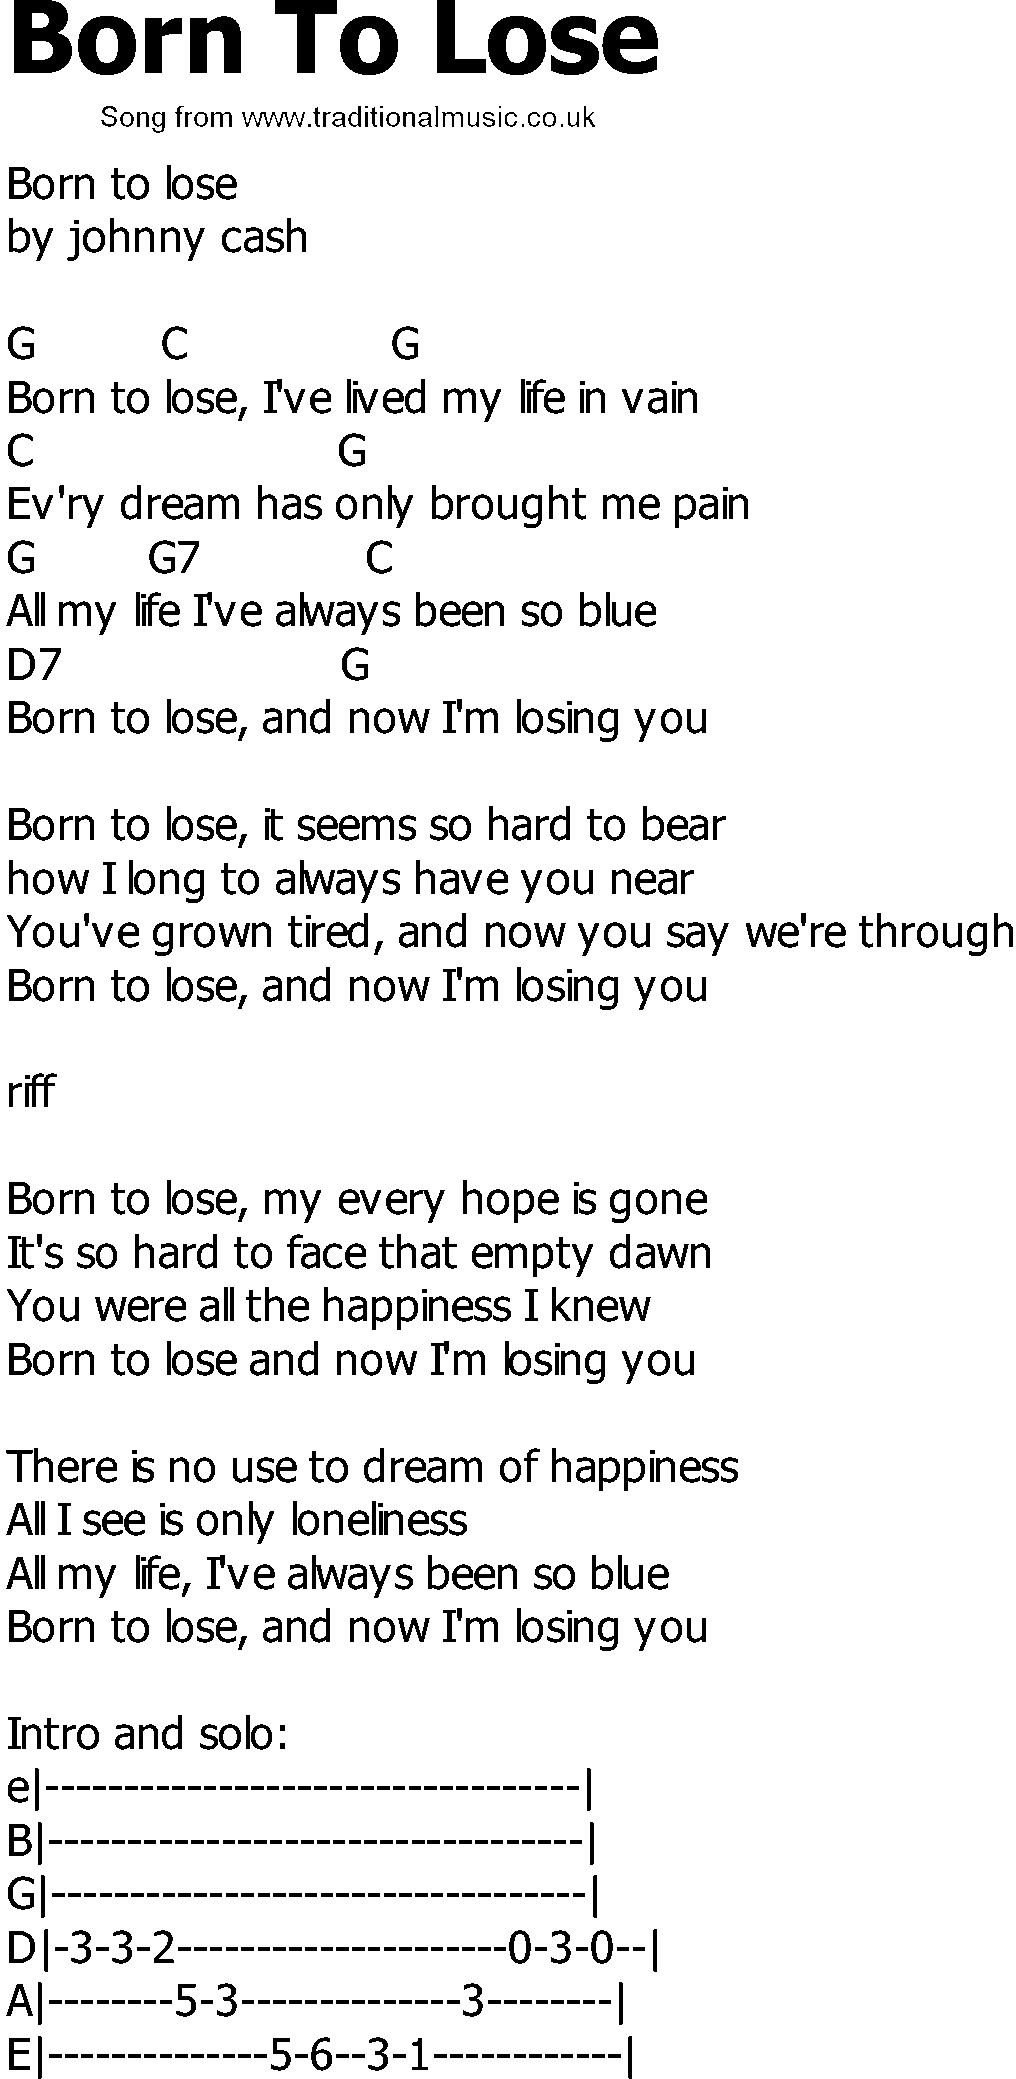 Lyrics 1964-2011